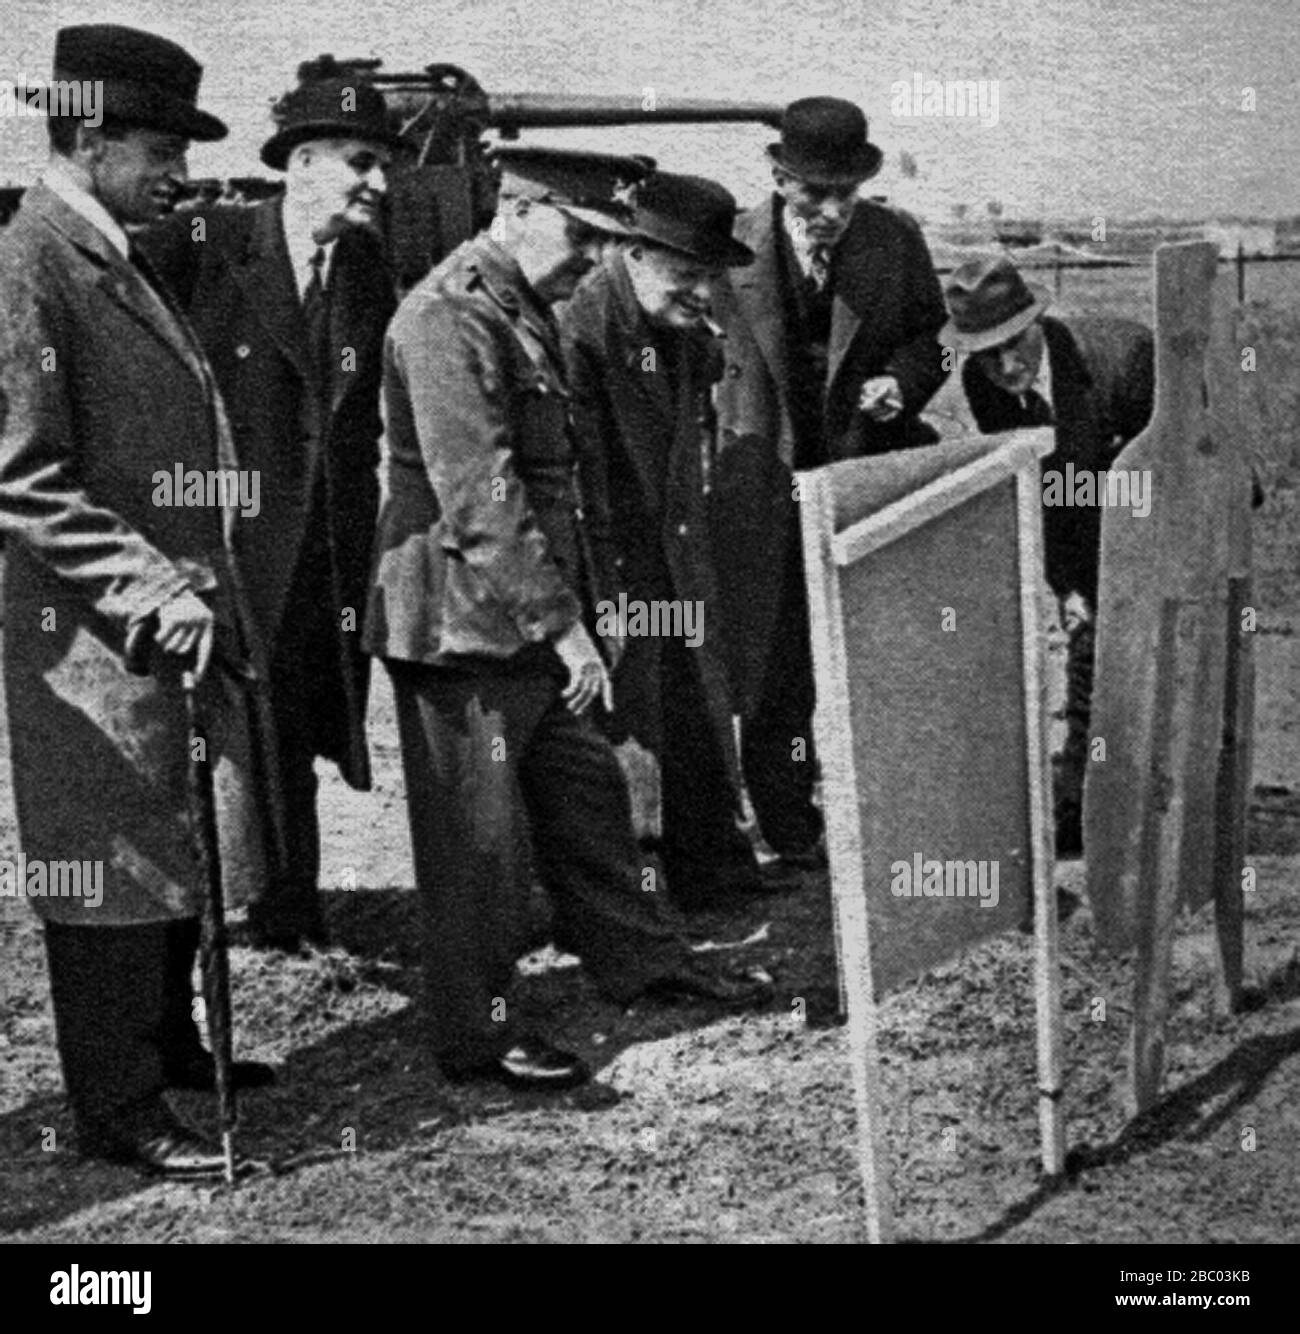 Churchill, Sir Archibald Sinclair y Lord Cherwell verifican la puntería de Churchill con una pistola Sten en un campo de tiro. 17 de junio de 1941 Foto de stock